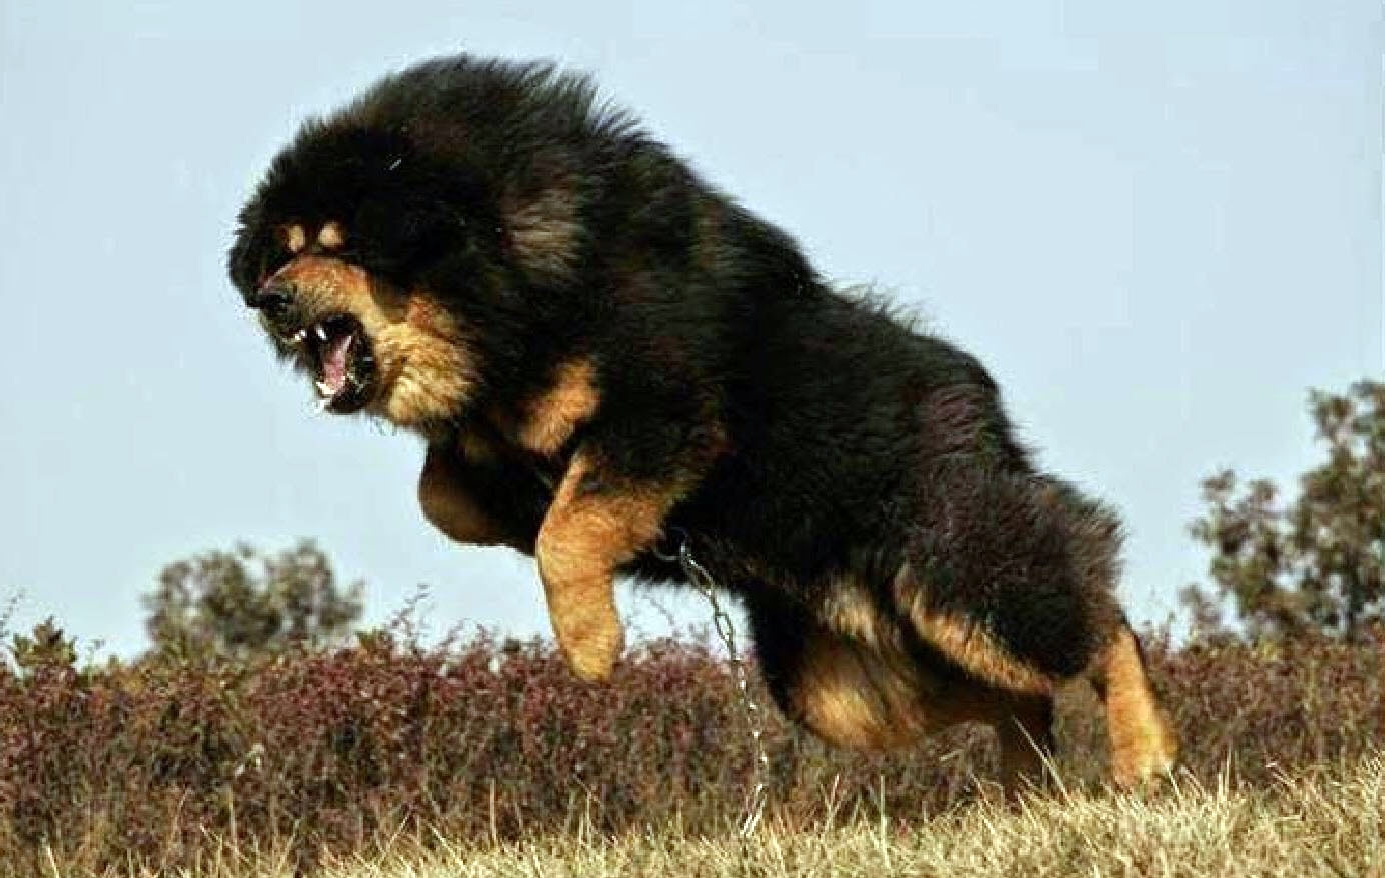 Tibetan Mastiff dog attacking